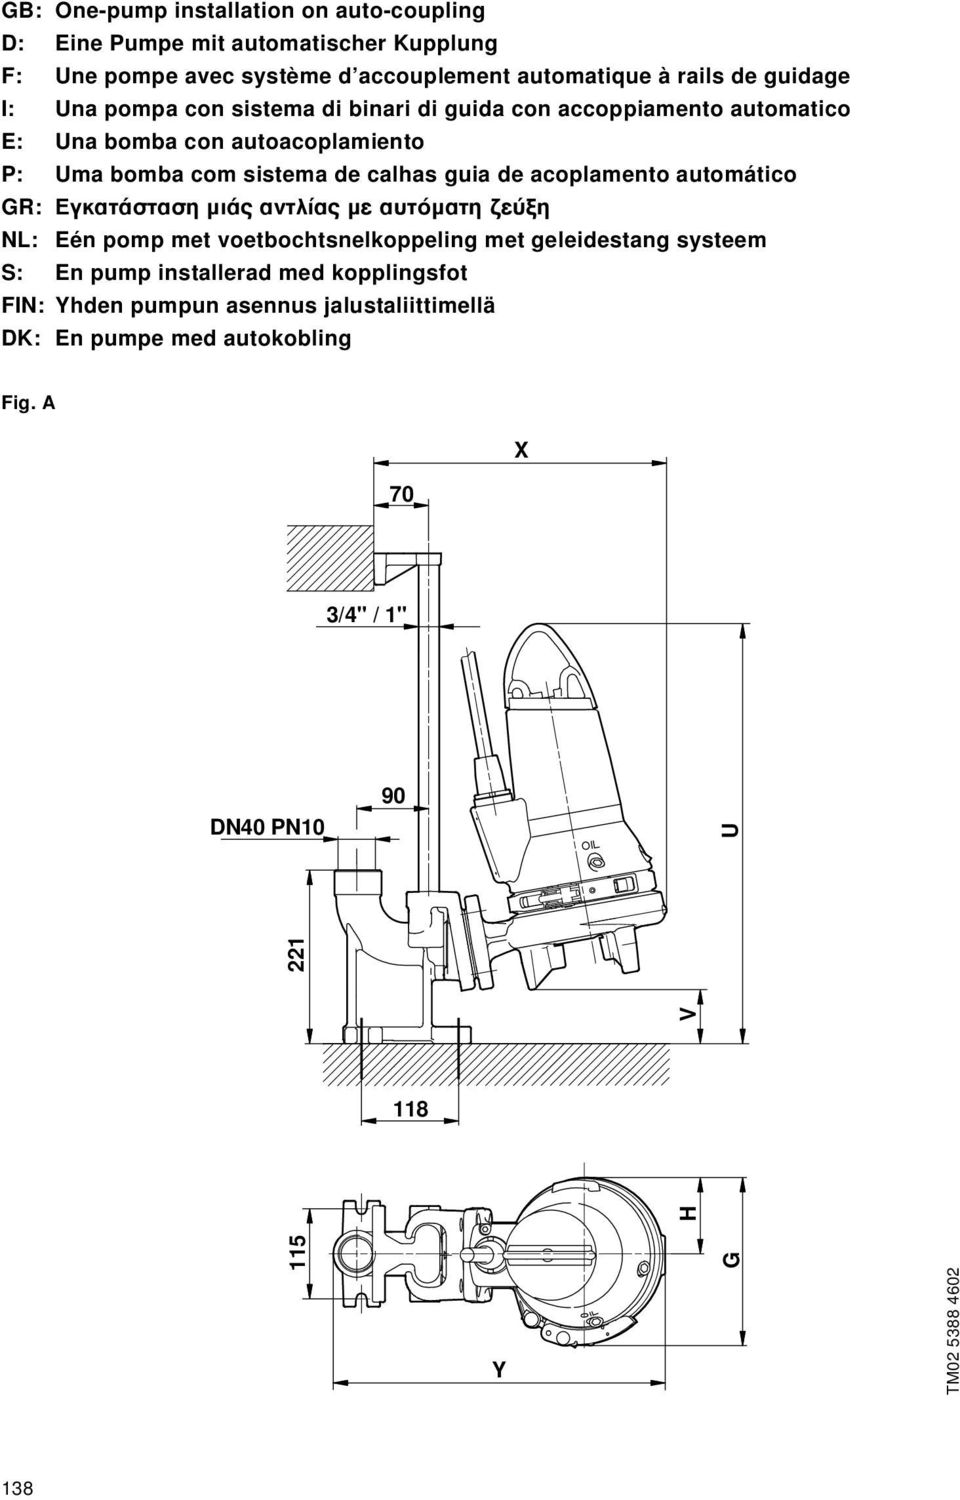 acoplamento automático GR: ÁÎ Ù ÛÙ ÛË ÌÈ ÓÙÏ ÌÂ ÙfiÌ ÙË Â ÍË NL: Eén pomp met voetbochtsnelkoppeling met geleidestang systeem S: En pump installerad med